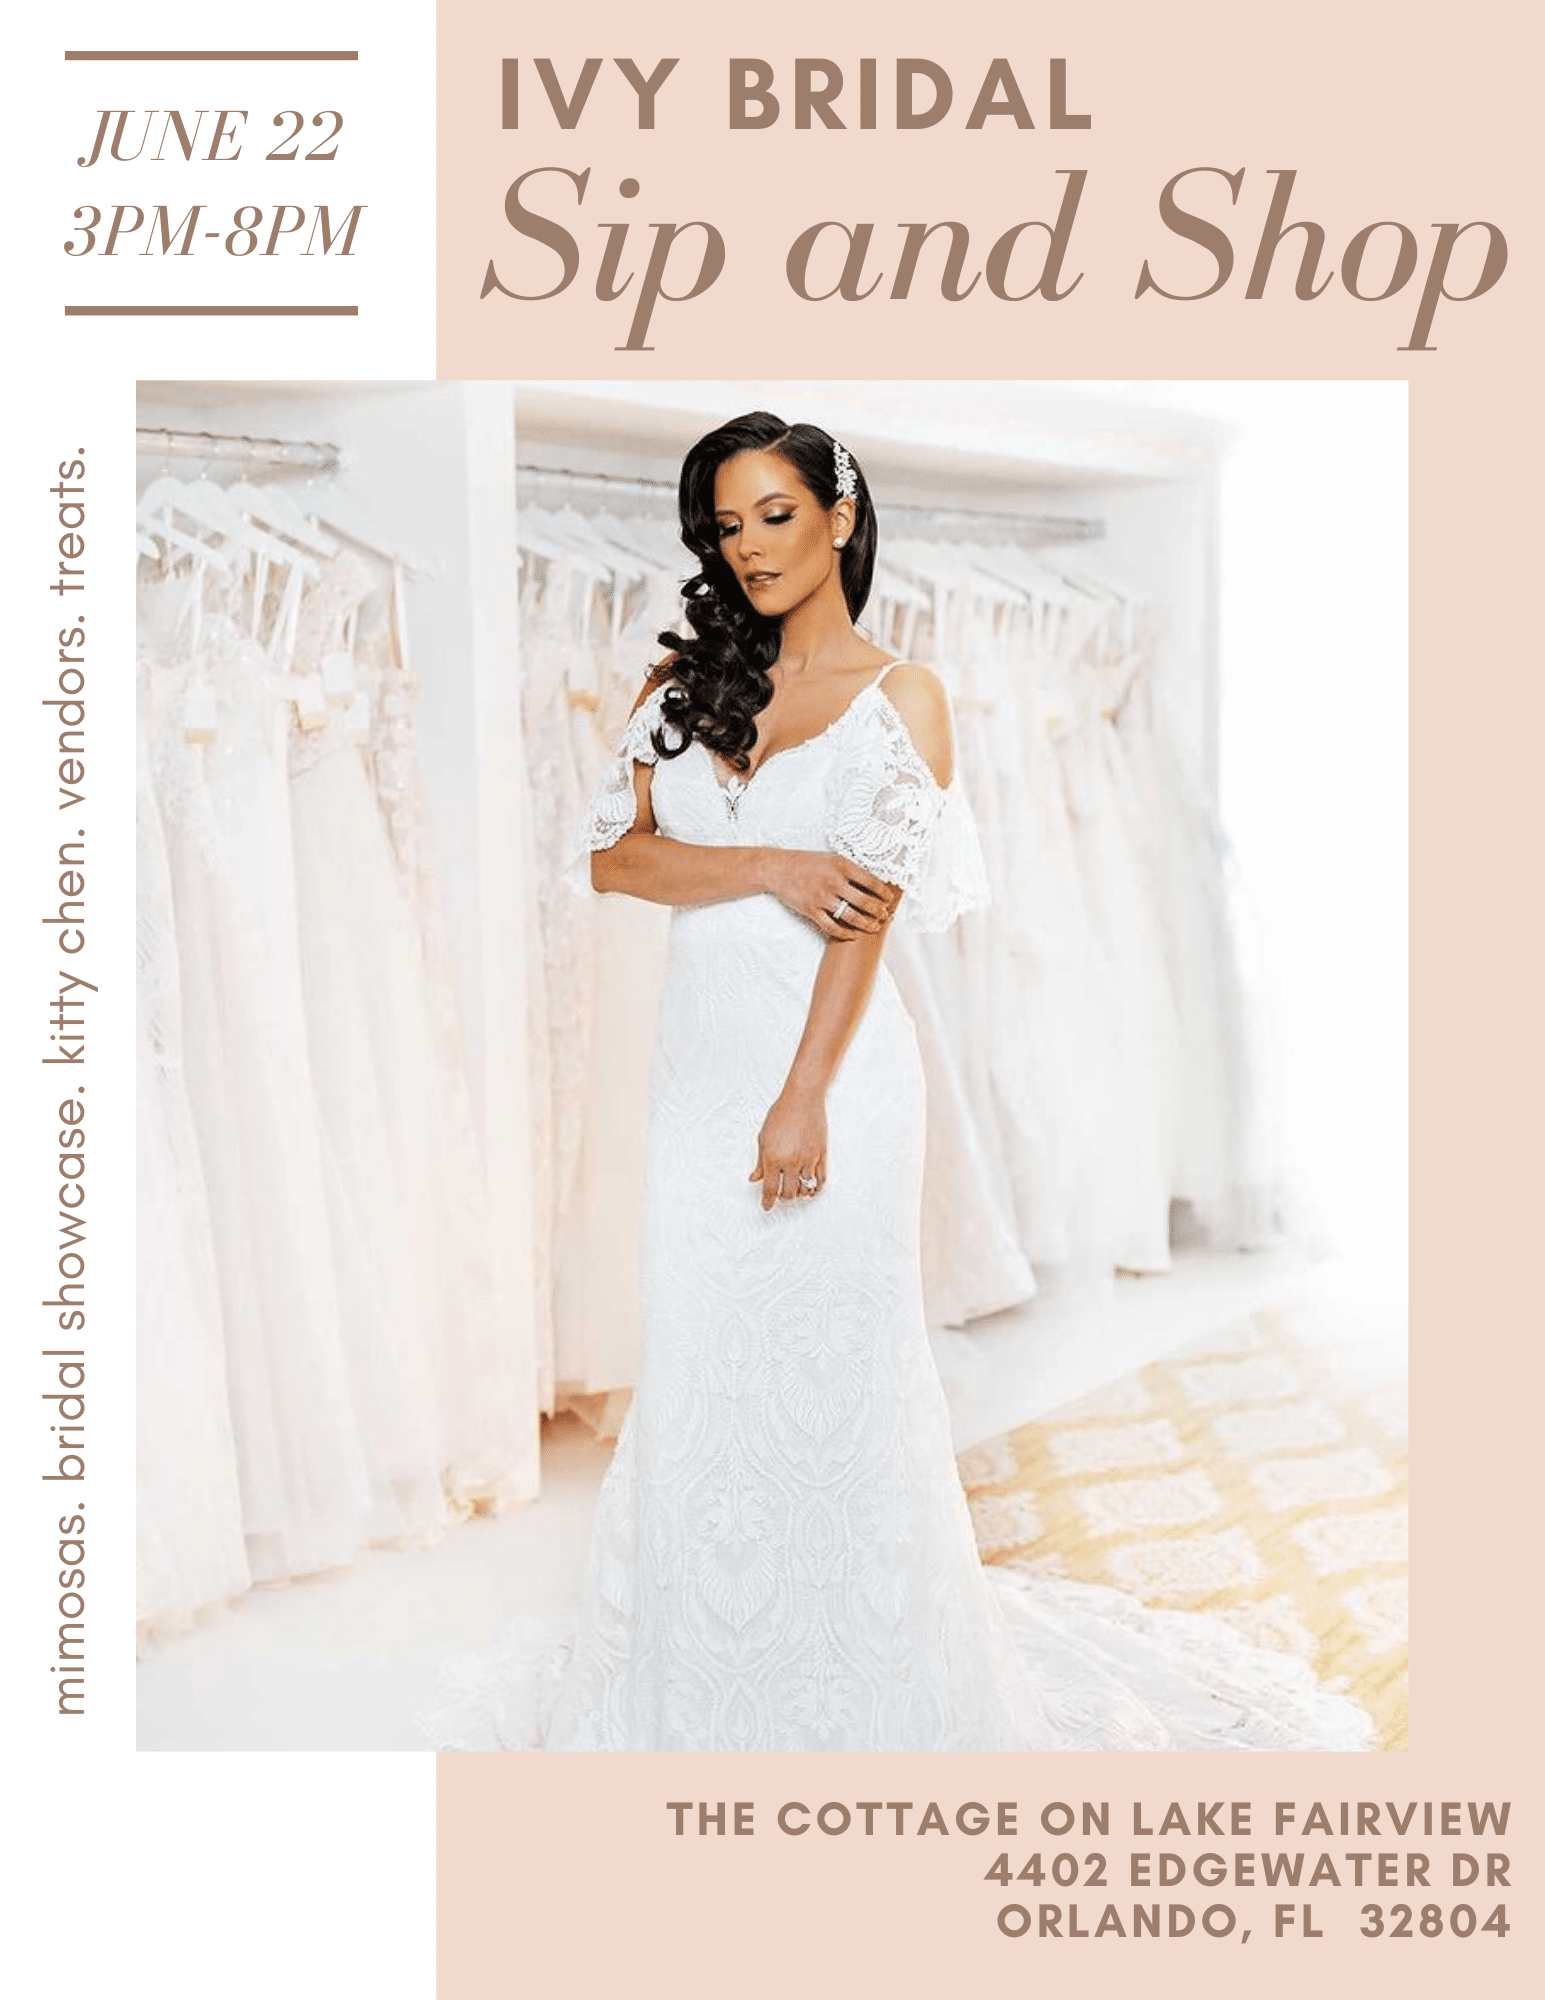 Ivy Bridal Sip and Shop